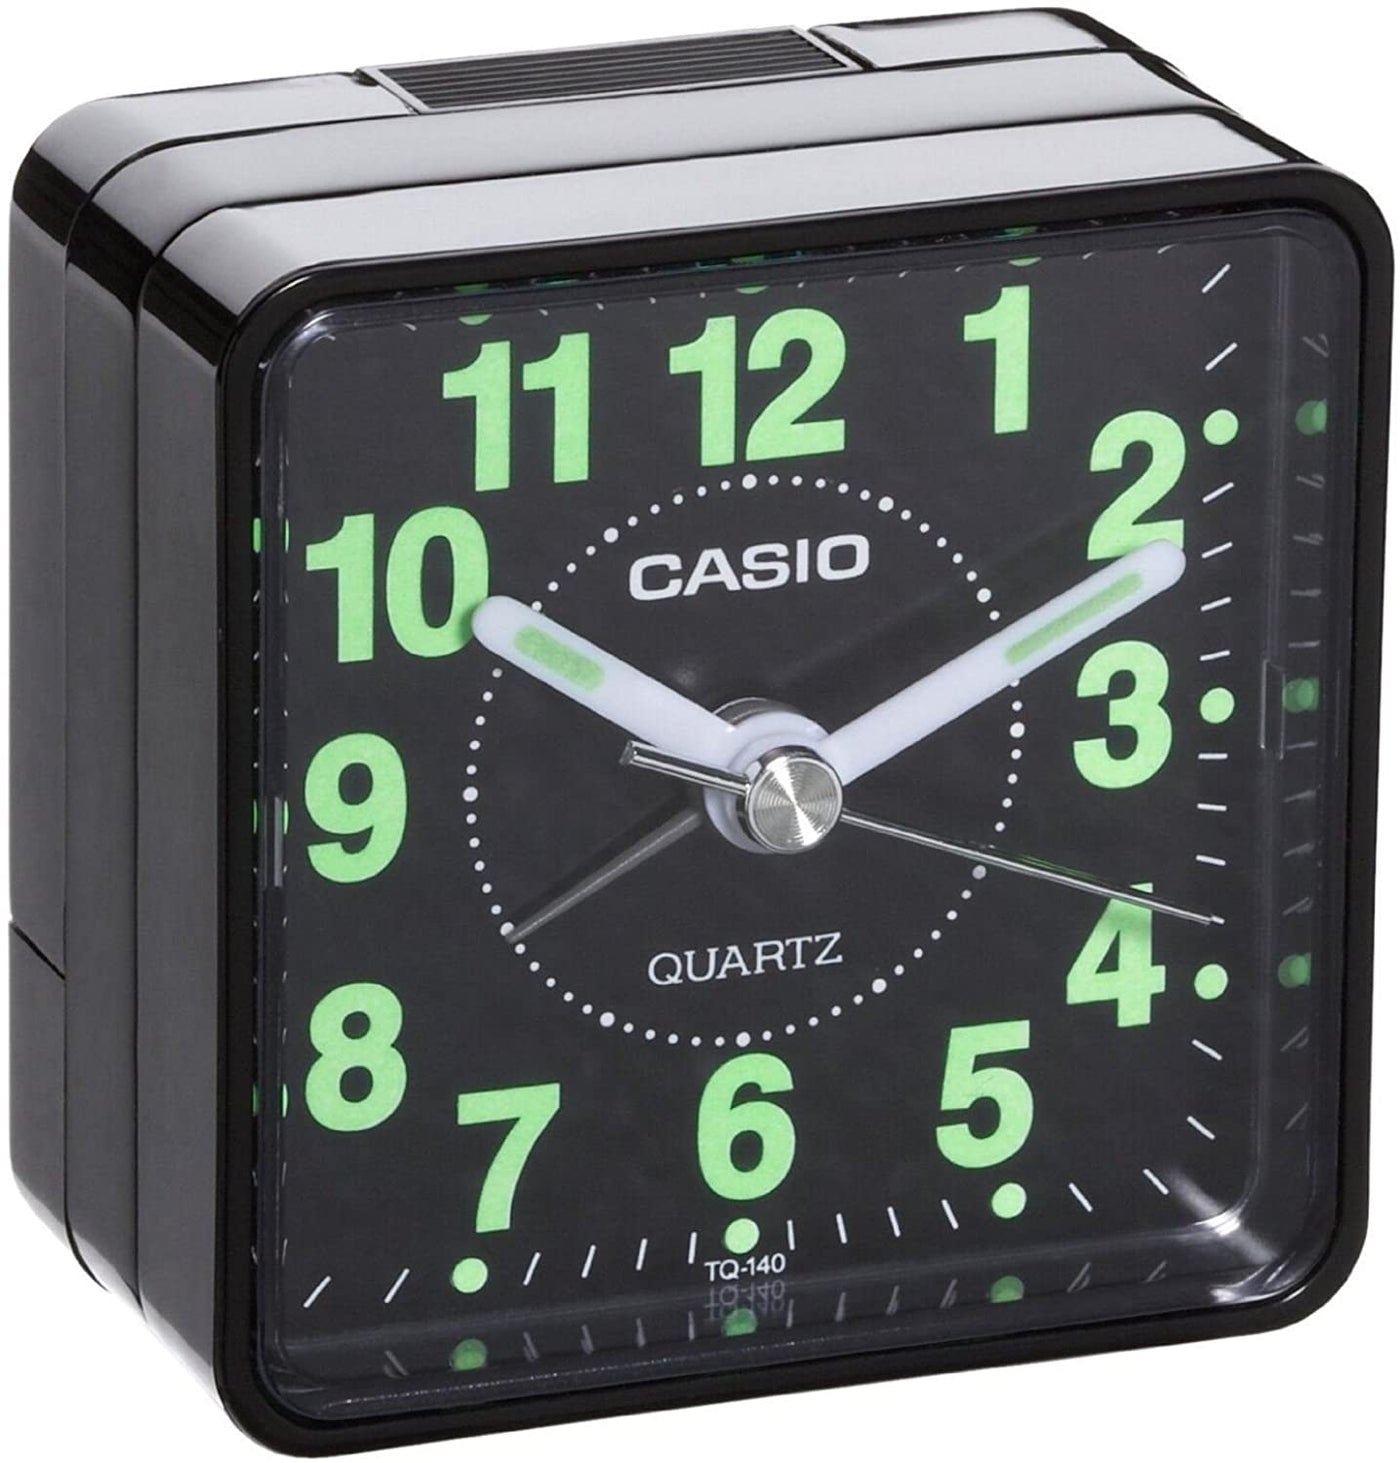 Black Casio Alarm Clock